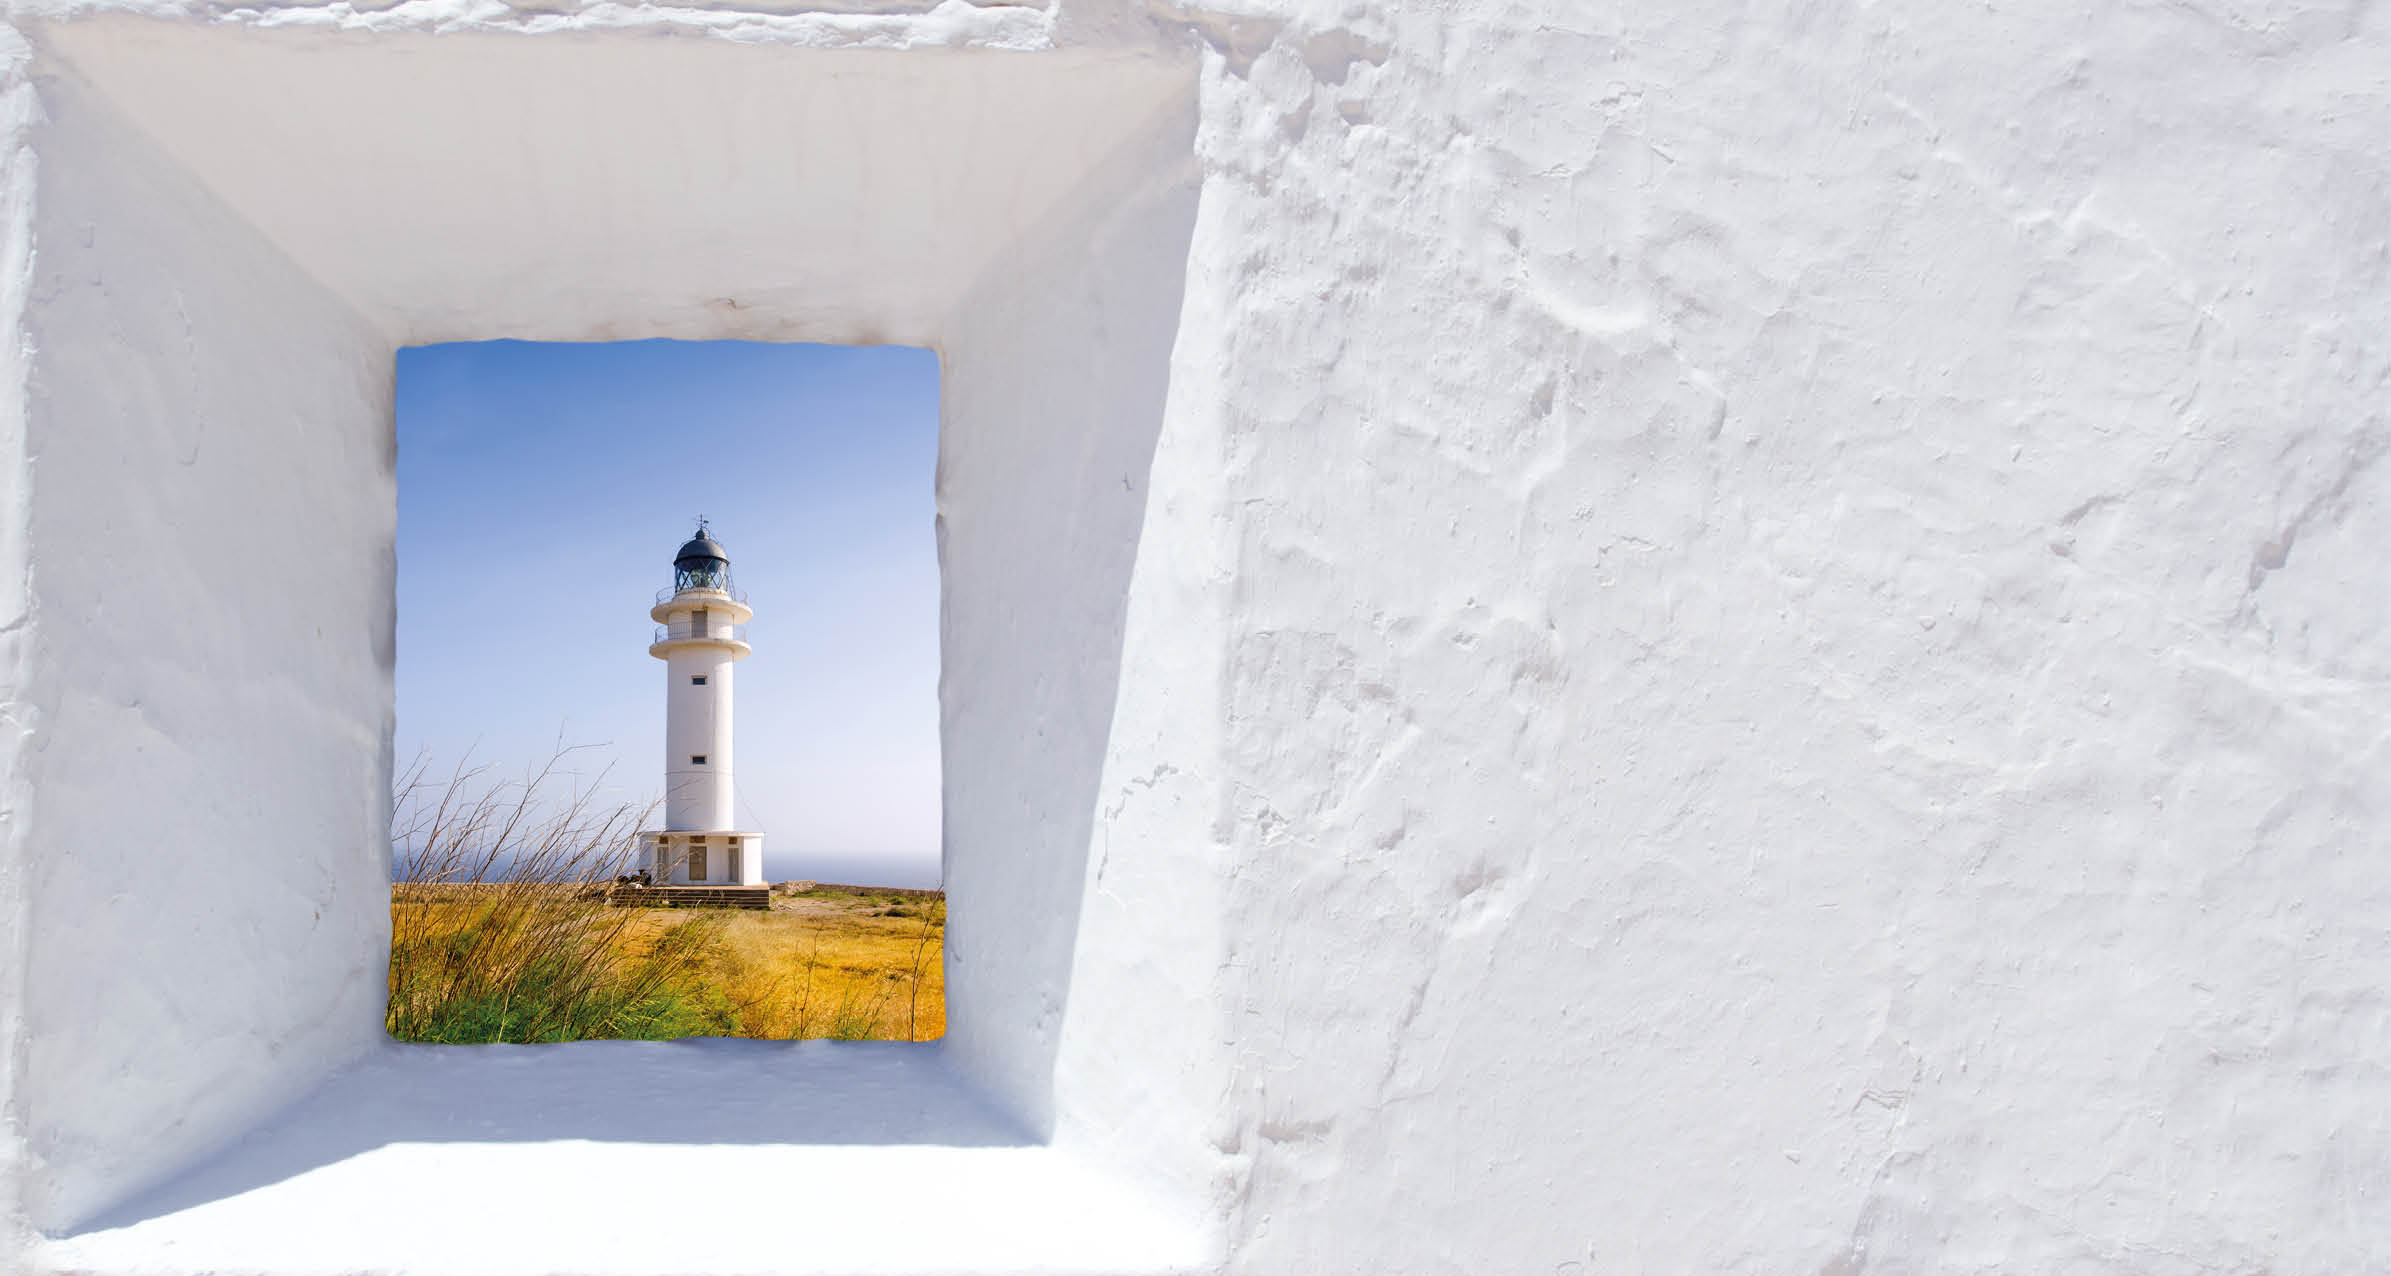 Formentera mediterranean white window with Barbaria lighthouse